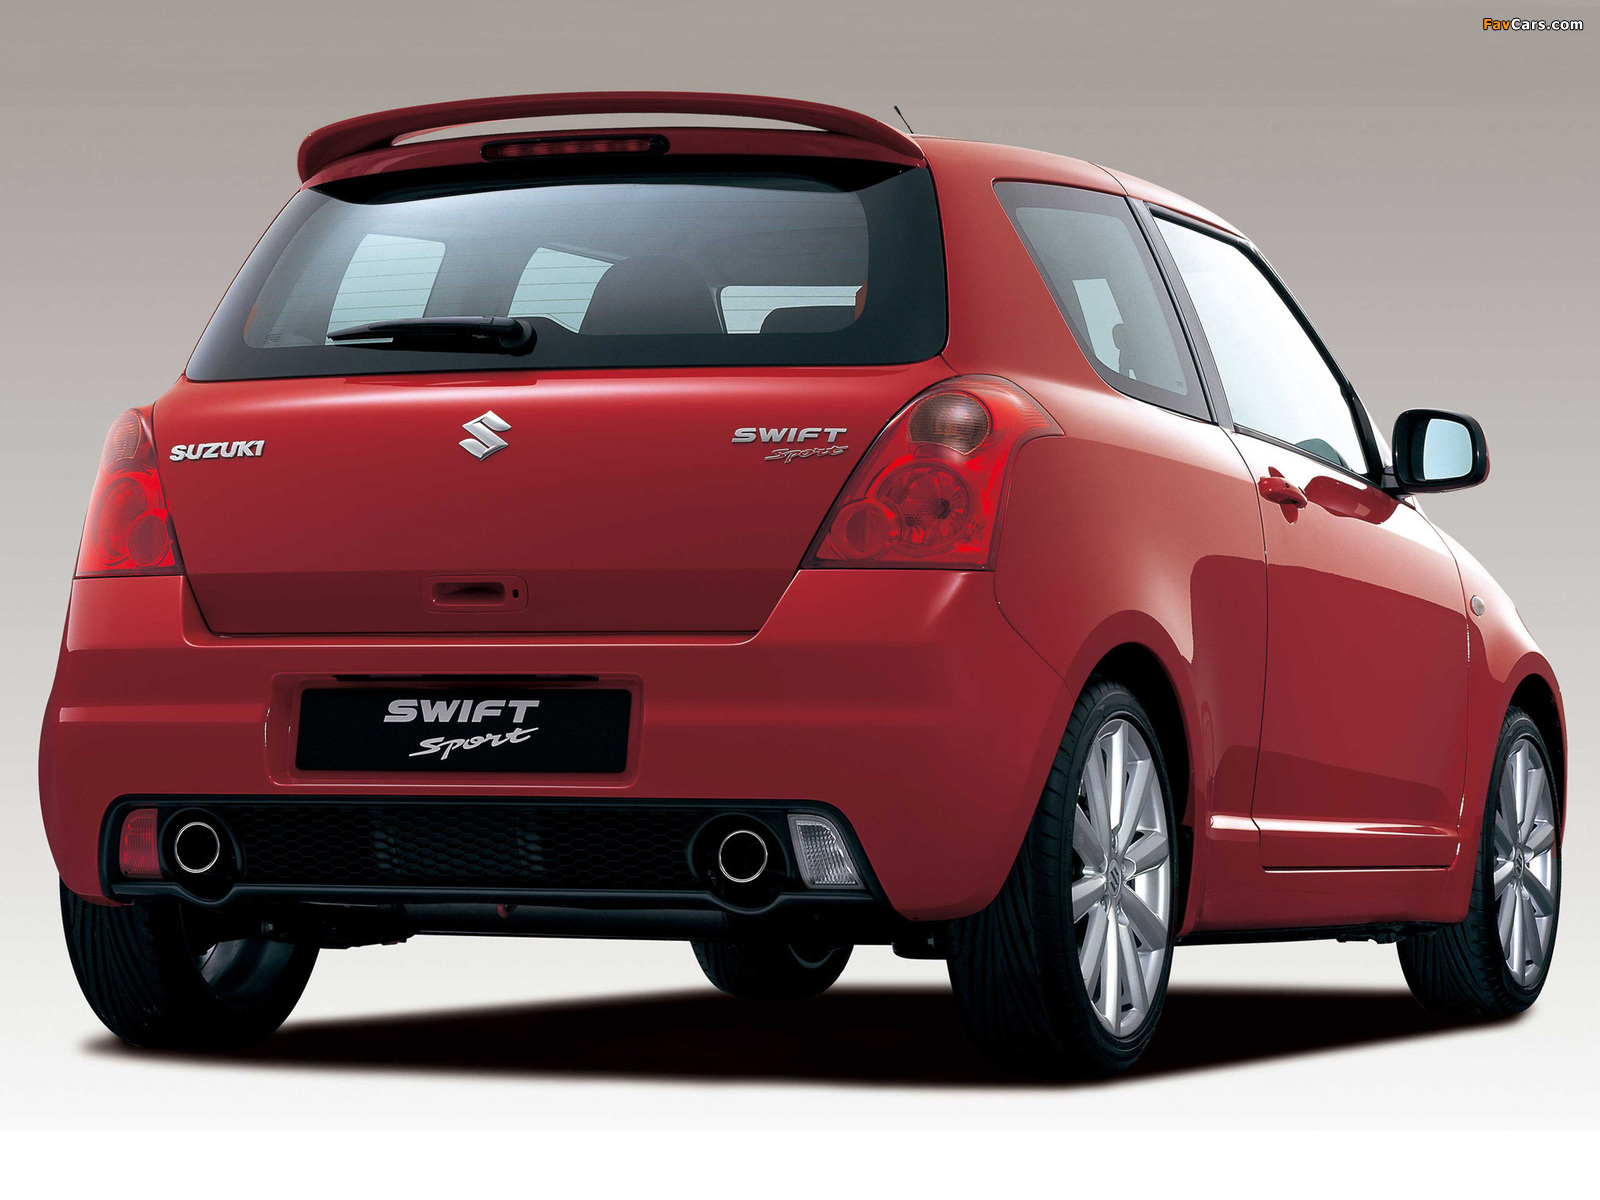 Pictures of Suzuki Swift Sport 200511 (1600x1200)